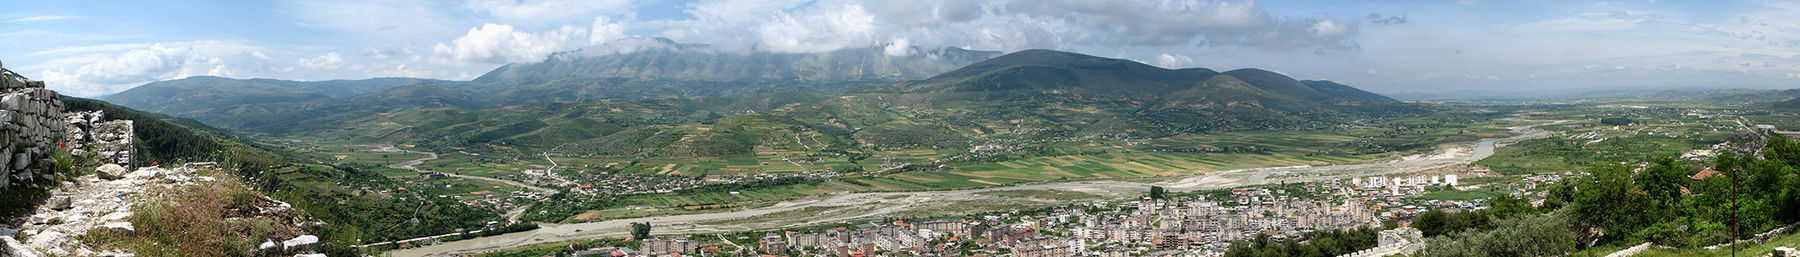 Albania banner.jpg